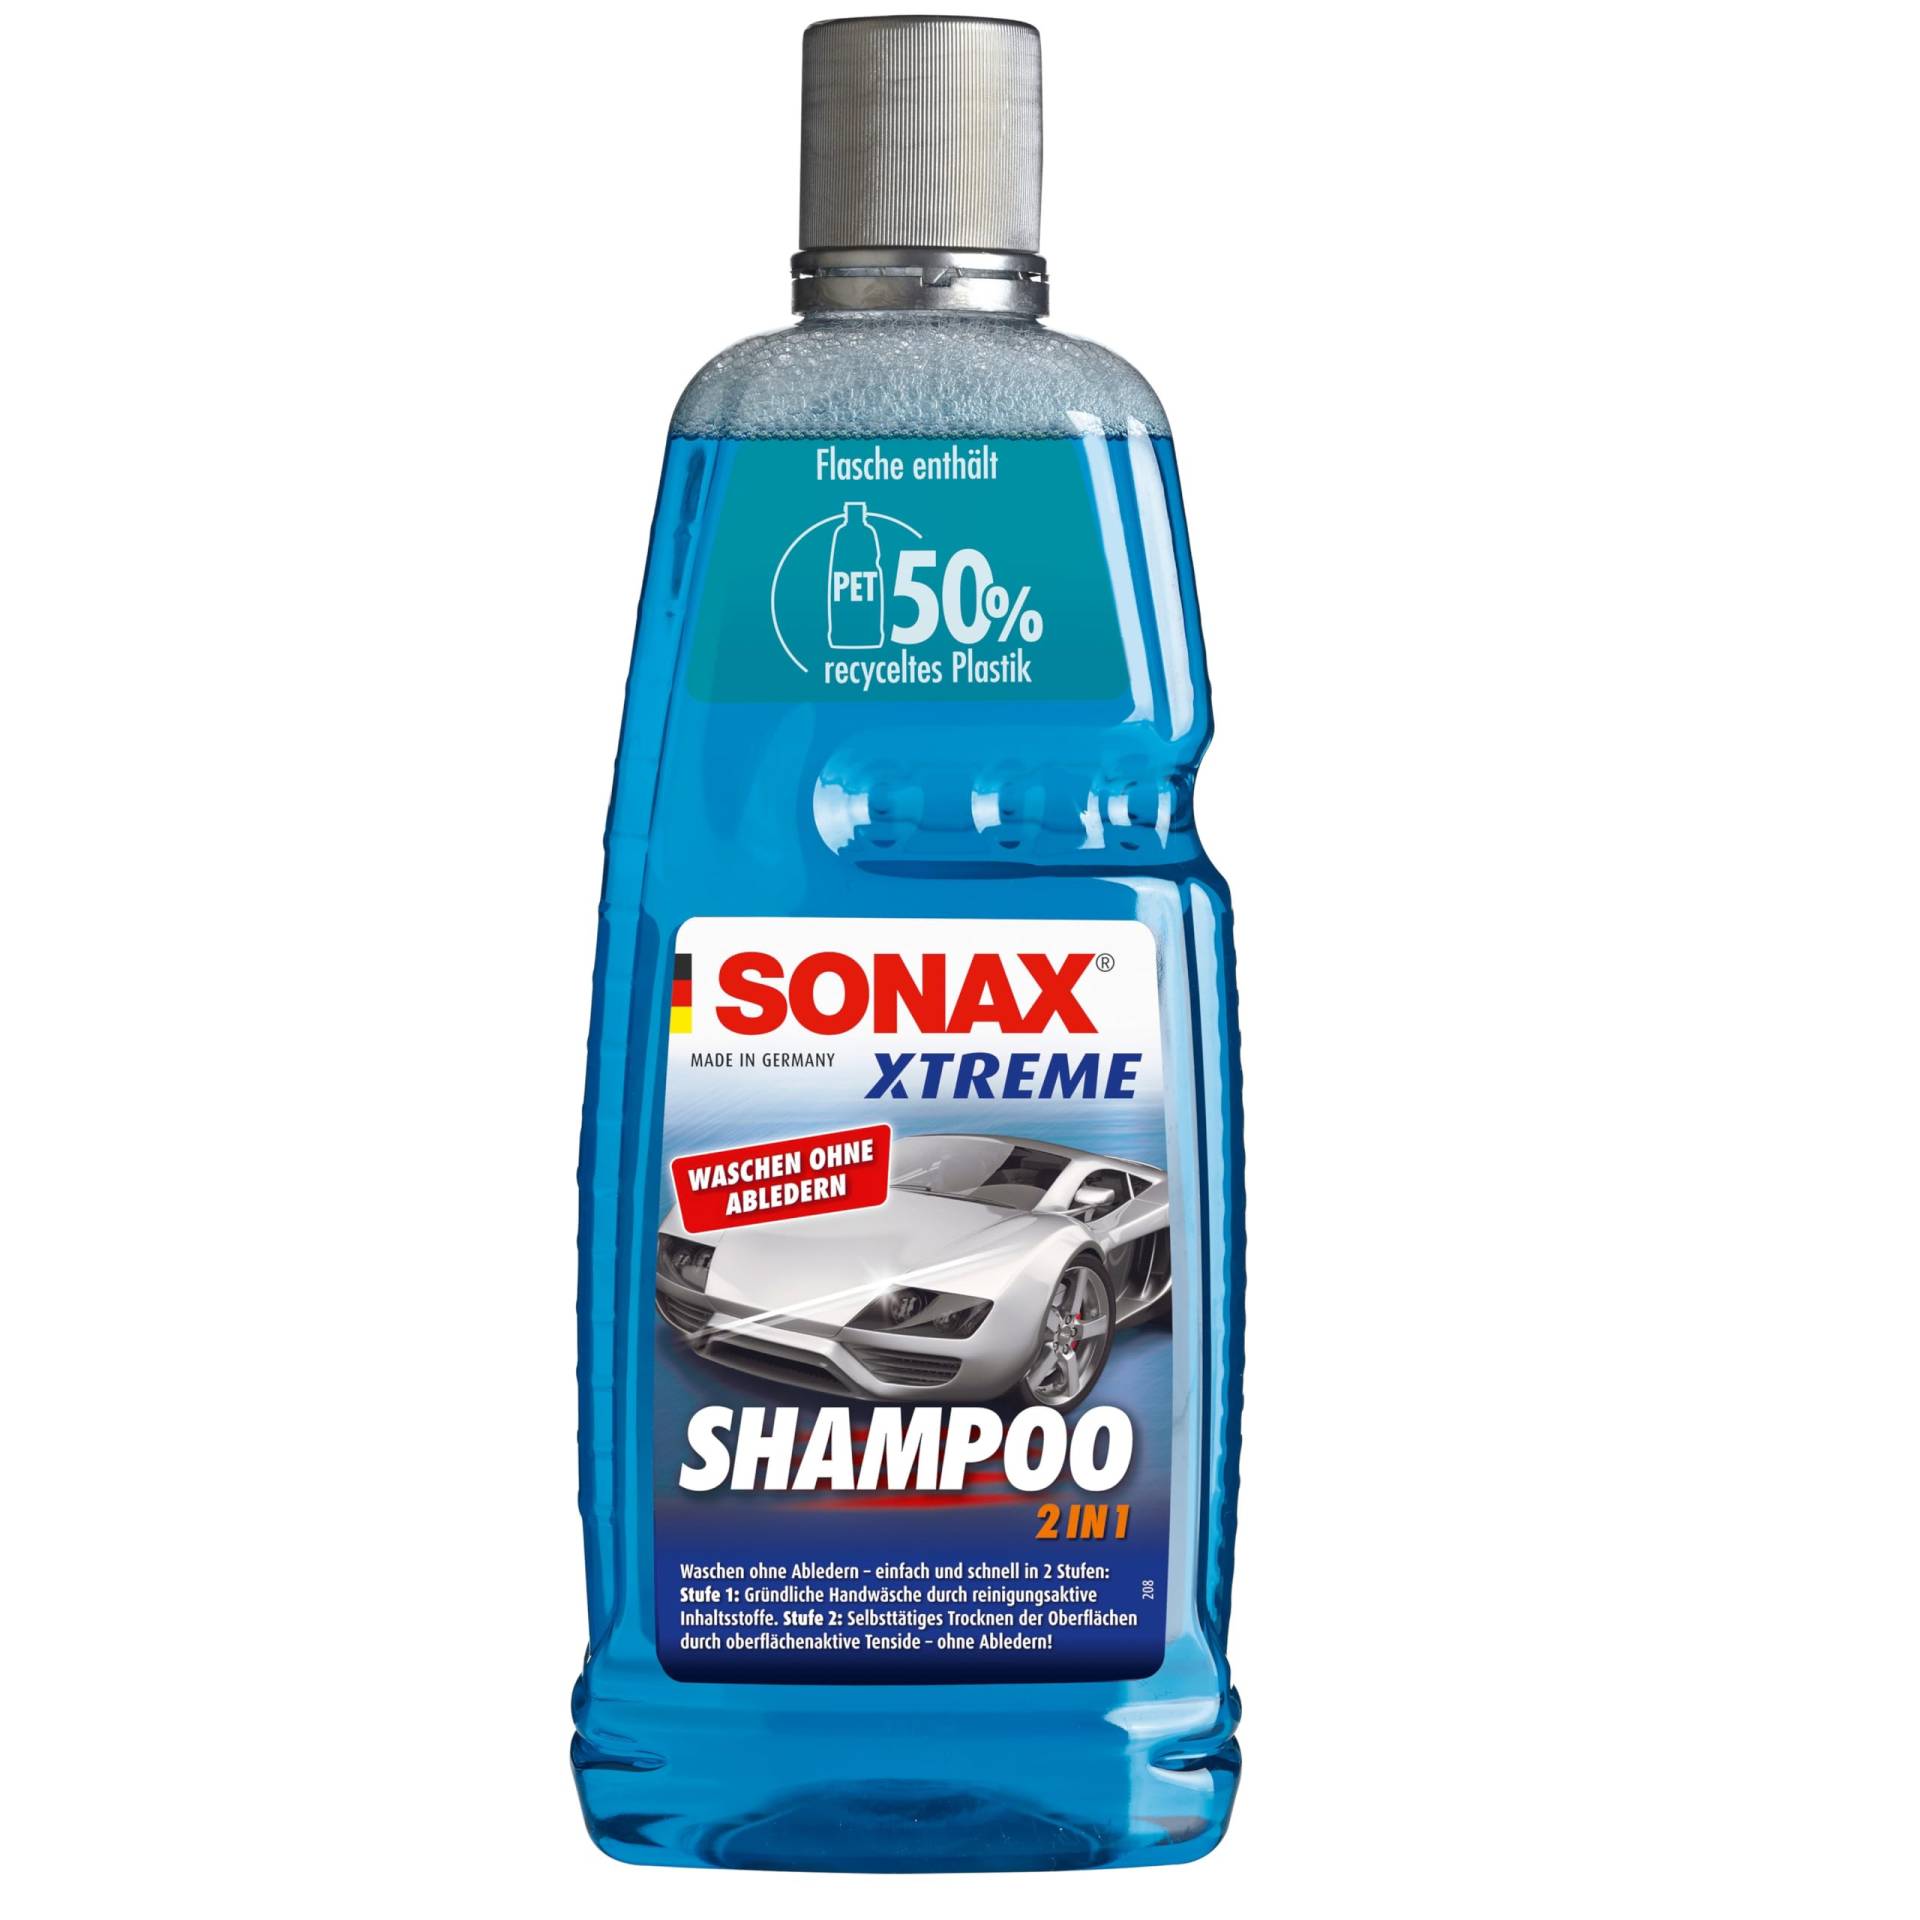 SONAX XTREME Shampoo 2 in 1 (1 Liter) Autoshampoo Konzentrat ohne Abledern zur Reinigung lackierter Oberflächen, Metall, Glas, Kunststoff & Gummi | Hellblau | Art-Nr. 02153000 von SONAX